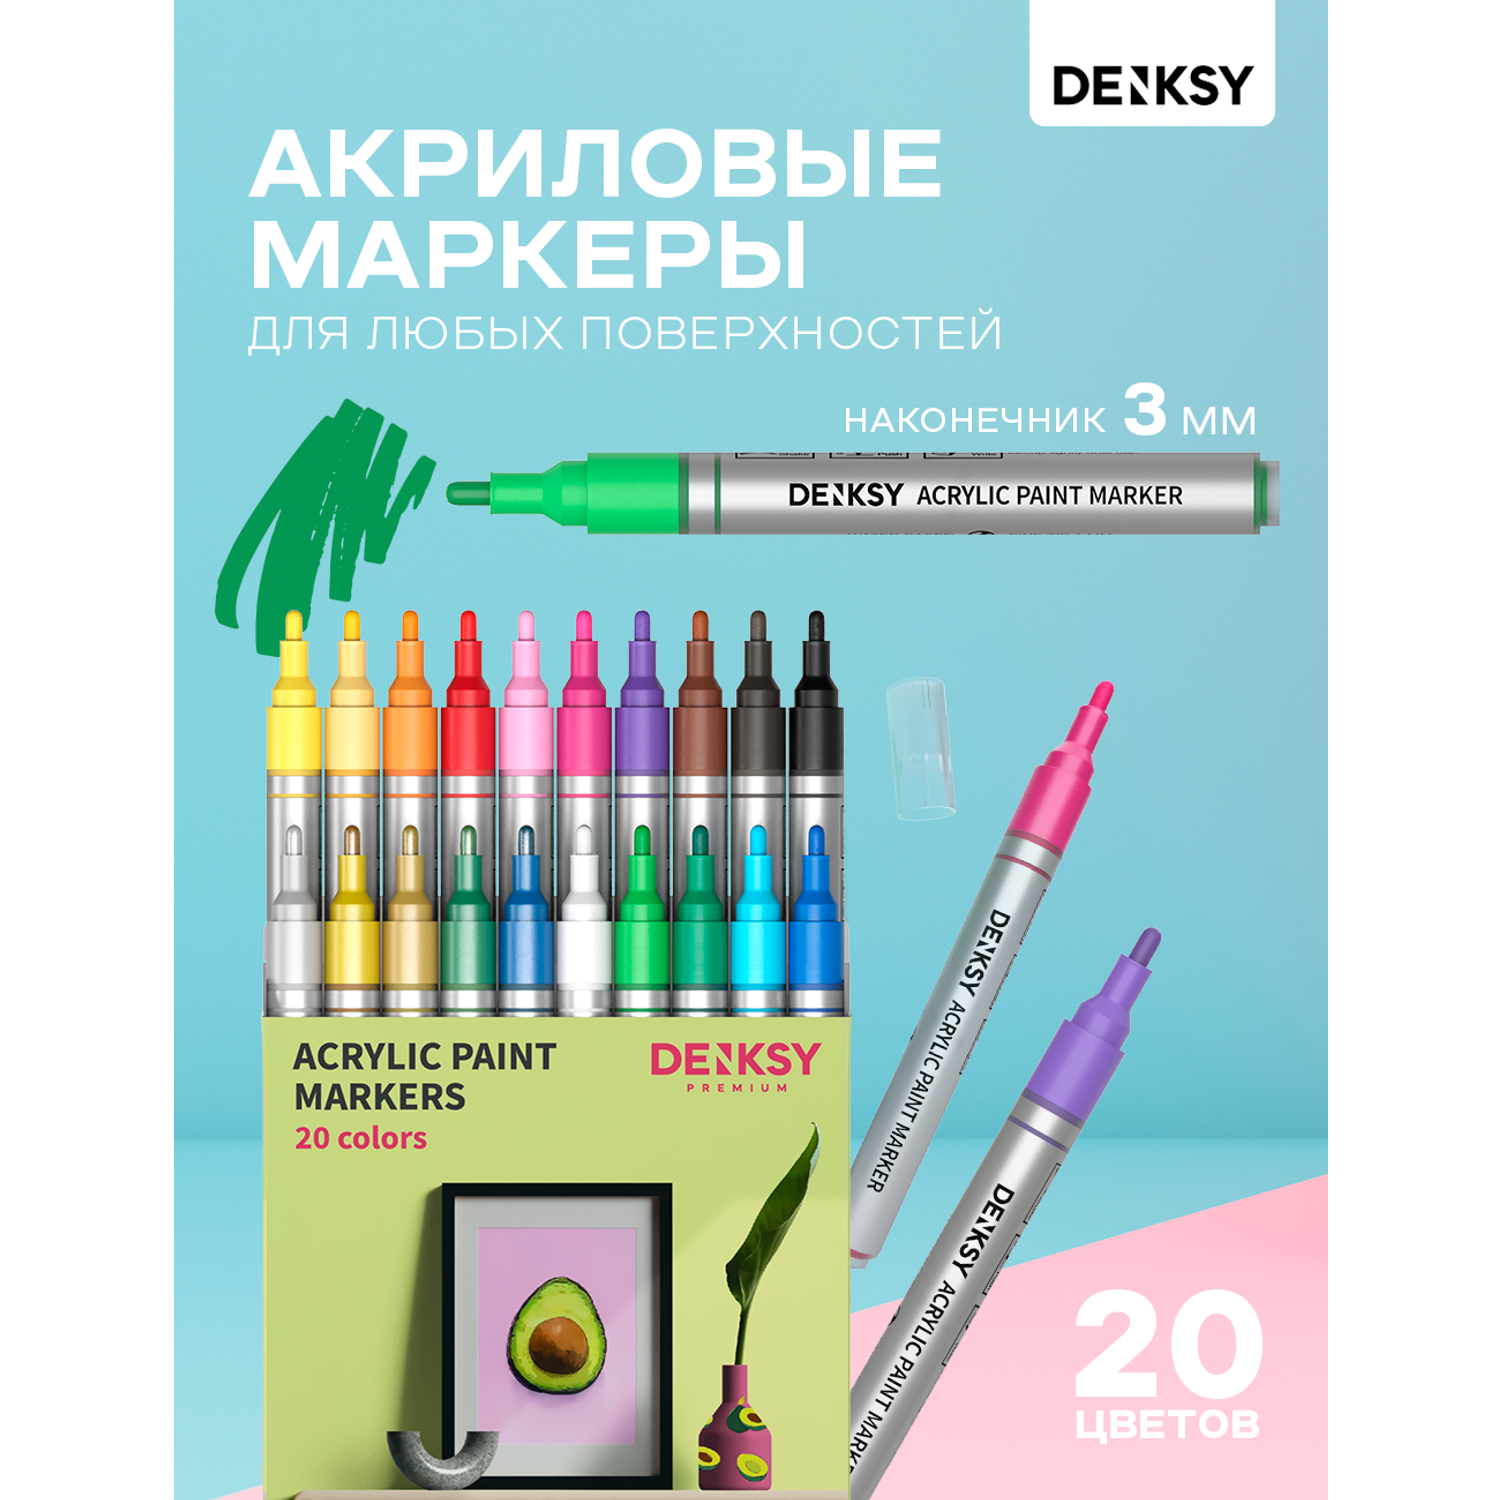 Акриловые маркеры DENKSY 20 цветов с наконечниками 3 мм - фото 1